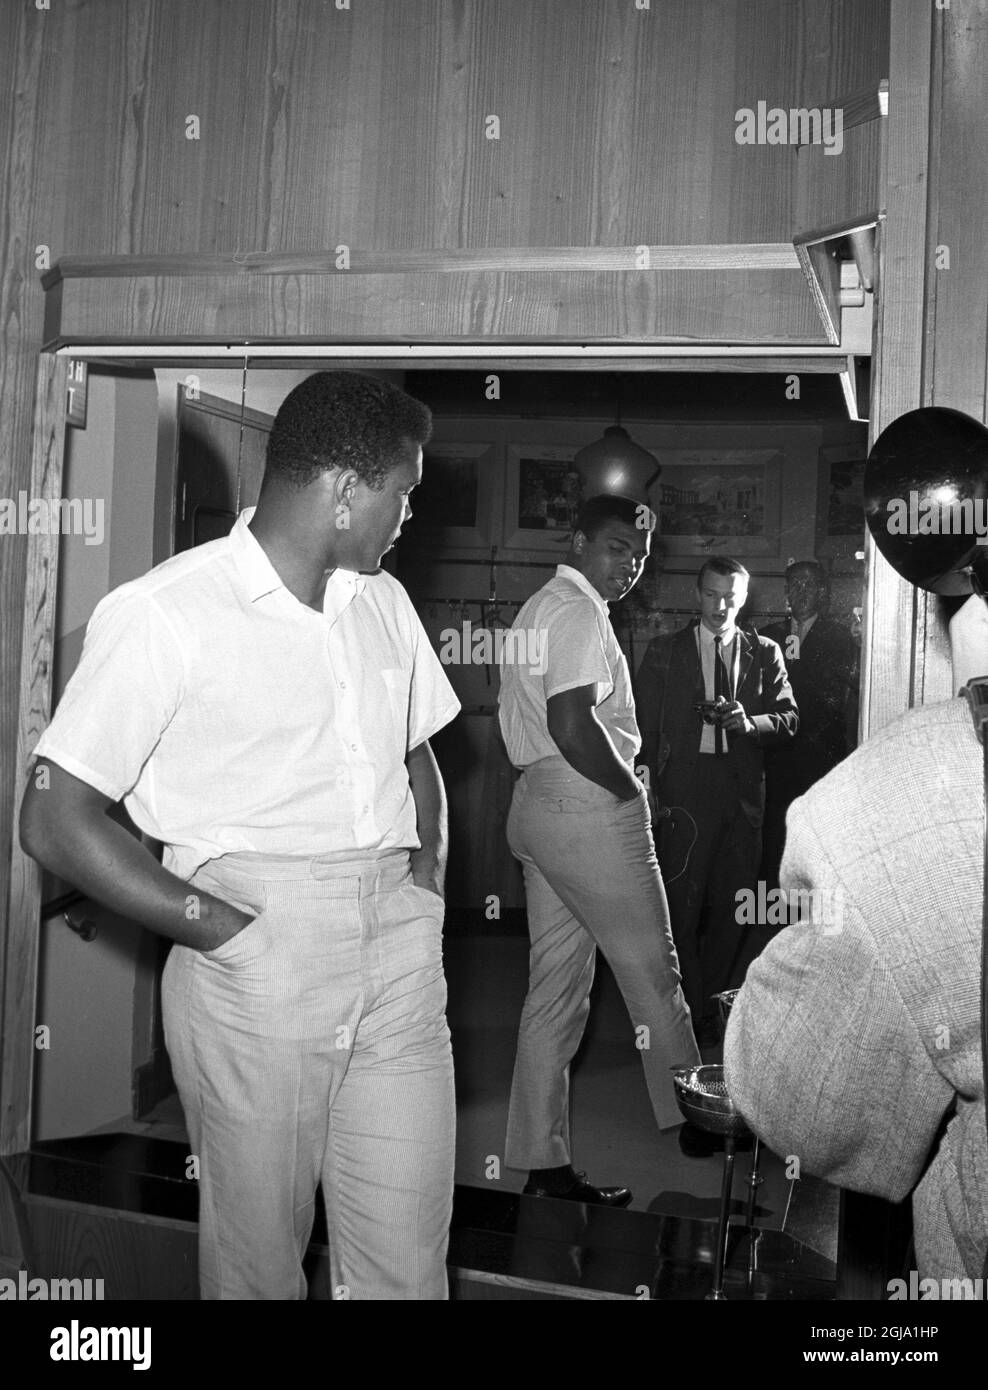 ARKIV STOCCOLMA 196508. Il campione del mondo di boxe Muhammad Ali prova un nuovo paio di pantaloni a Stoccolma, Svezia 1965. Ali era in Svezia per la lotta in mostra. Foto: Sven-Gosta Johansson / Scanpix / Kod: 262 Foto Stock